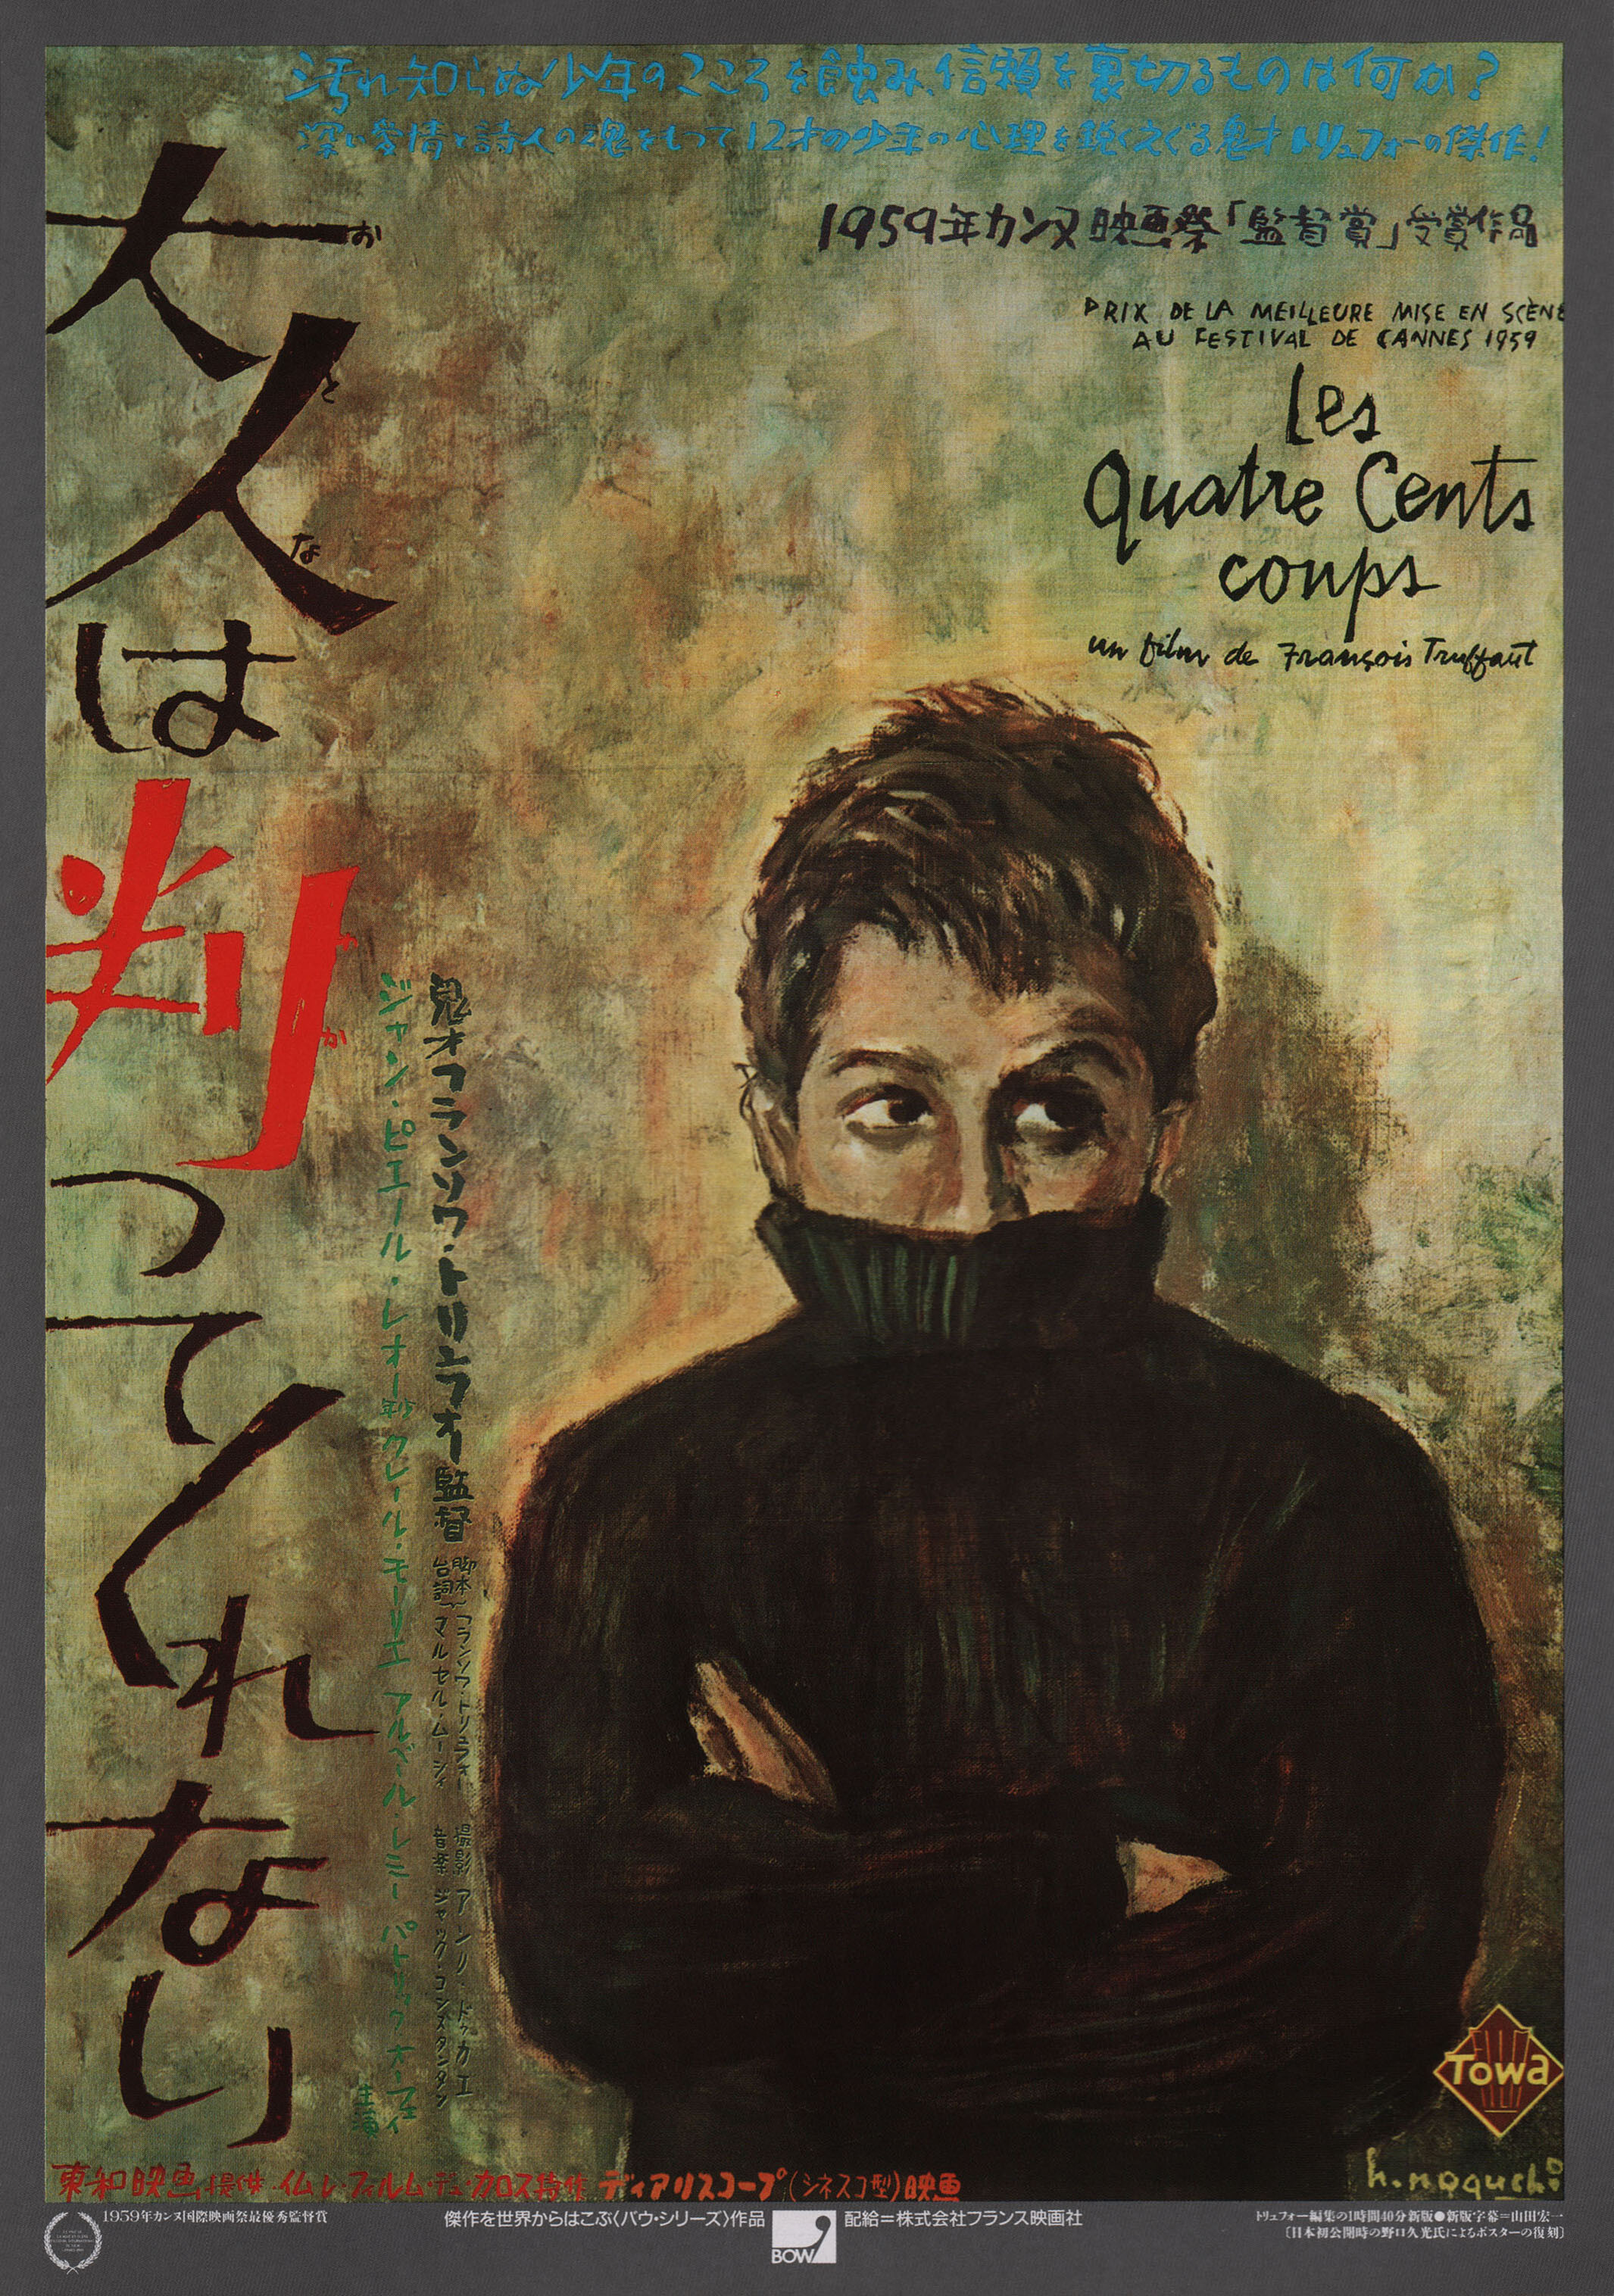 Четыреста ударов (The 400 Blows, 1959), режиссёр Франсуа Трюффо, художественный постер к фильму (Япония, 1980 год), автор Хисамицу Ногучи